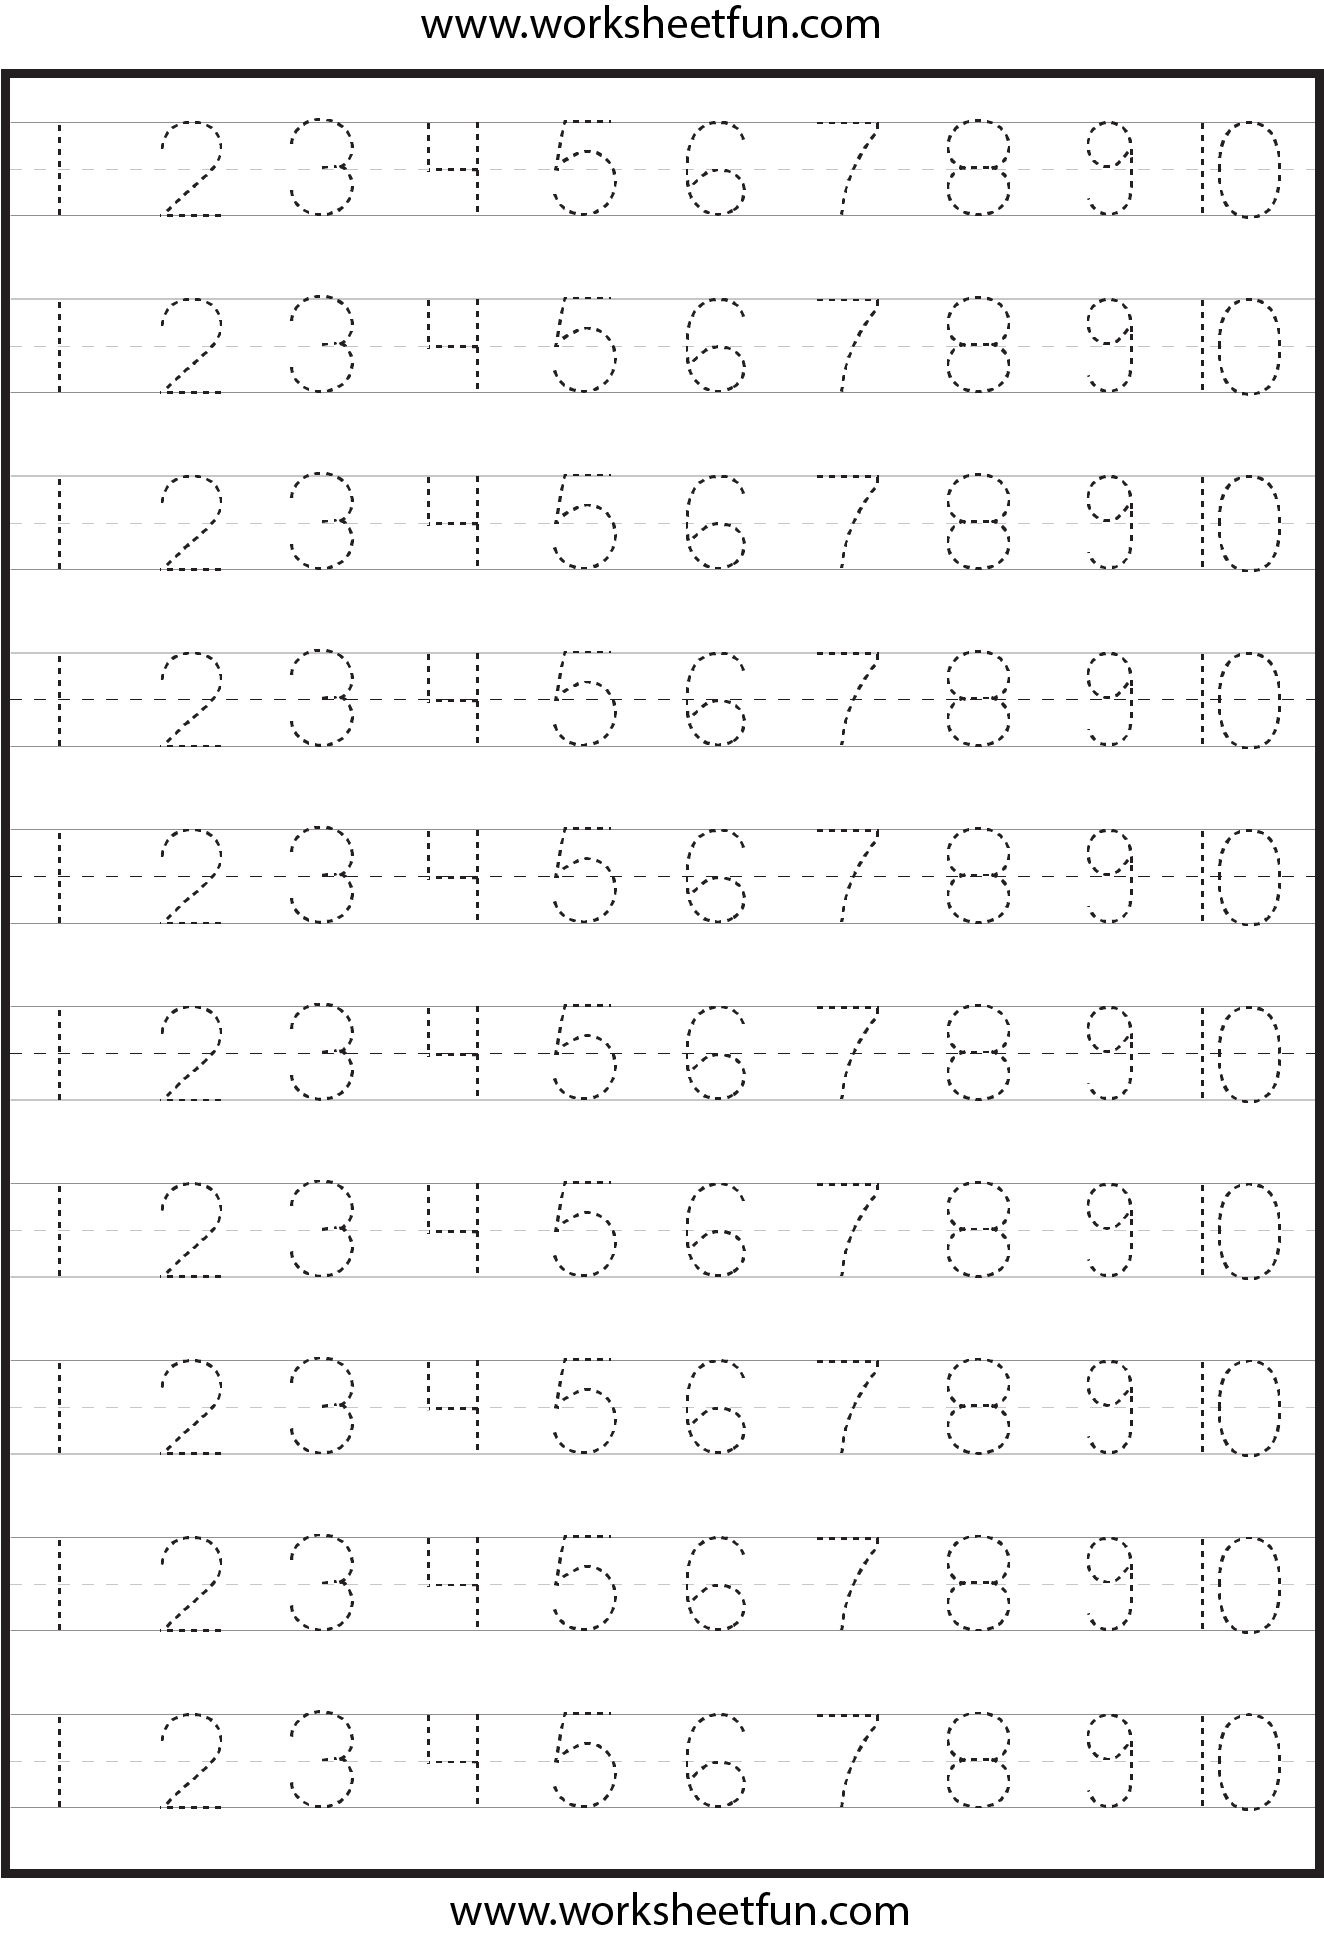 number-tracing-4-worksheets-free-printable-worksheets-worksheetfun